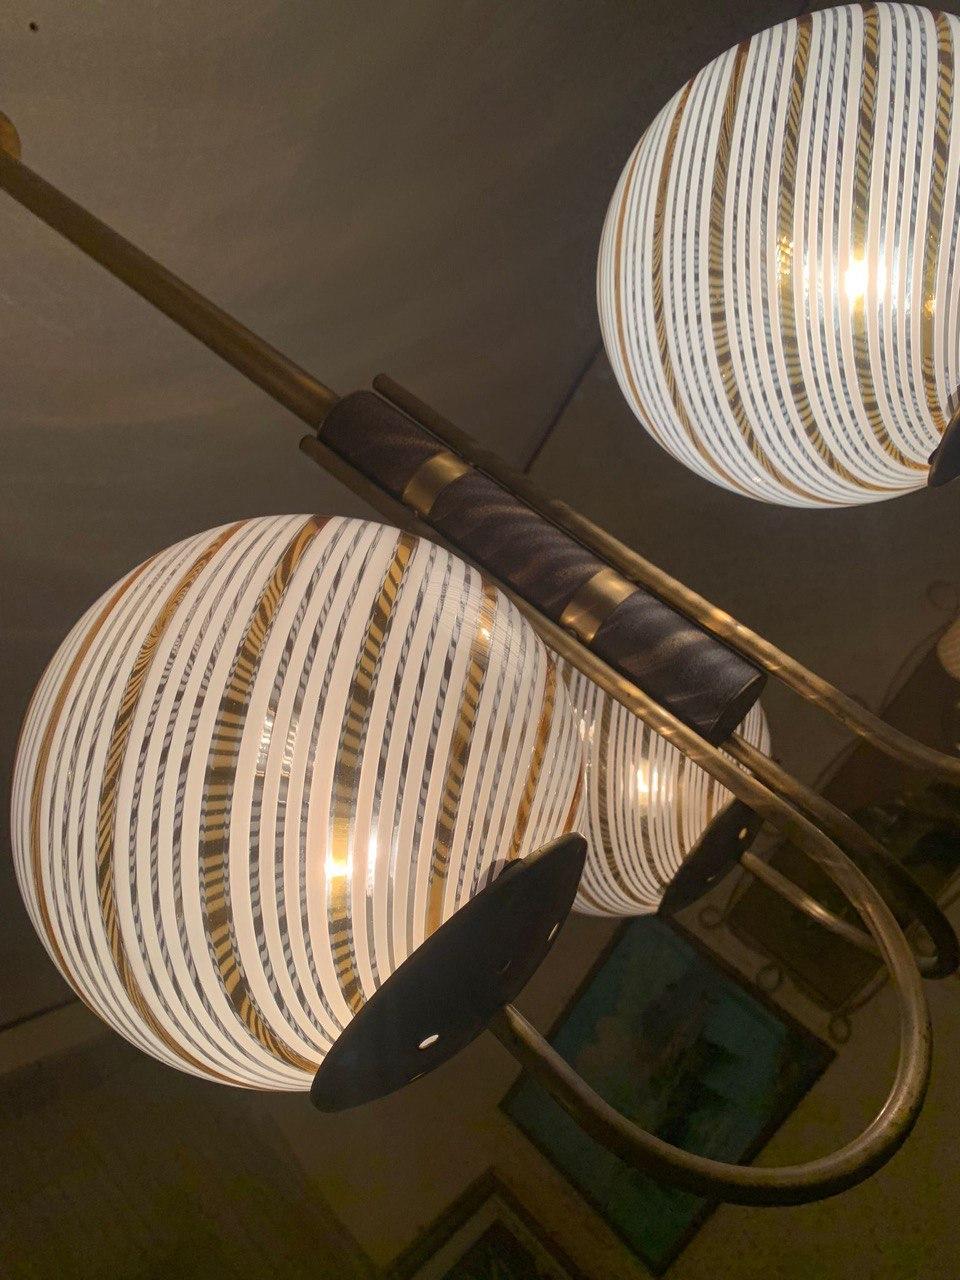 Bellissimo lampadario a  tre diffusori di luce costituiti da bocce in vetro di Murano  con motivo a filigrana di Venini bianco e giallo con struttura in ottone e ghisa. Perfettamente funzionante ,di ottima fattura.
Qualche dettaglio in più al